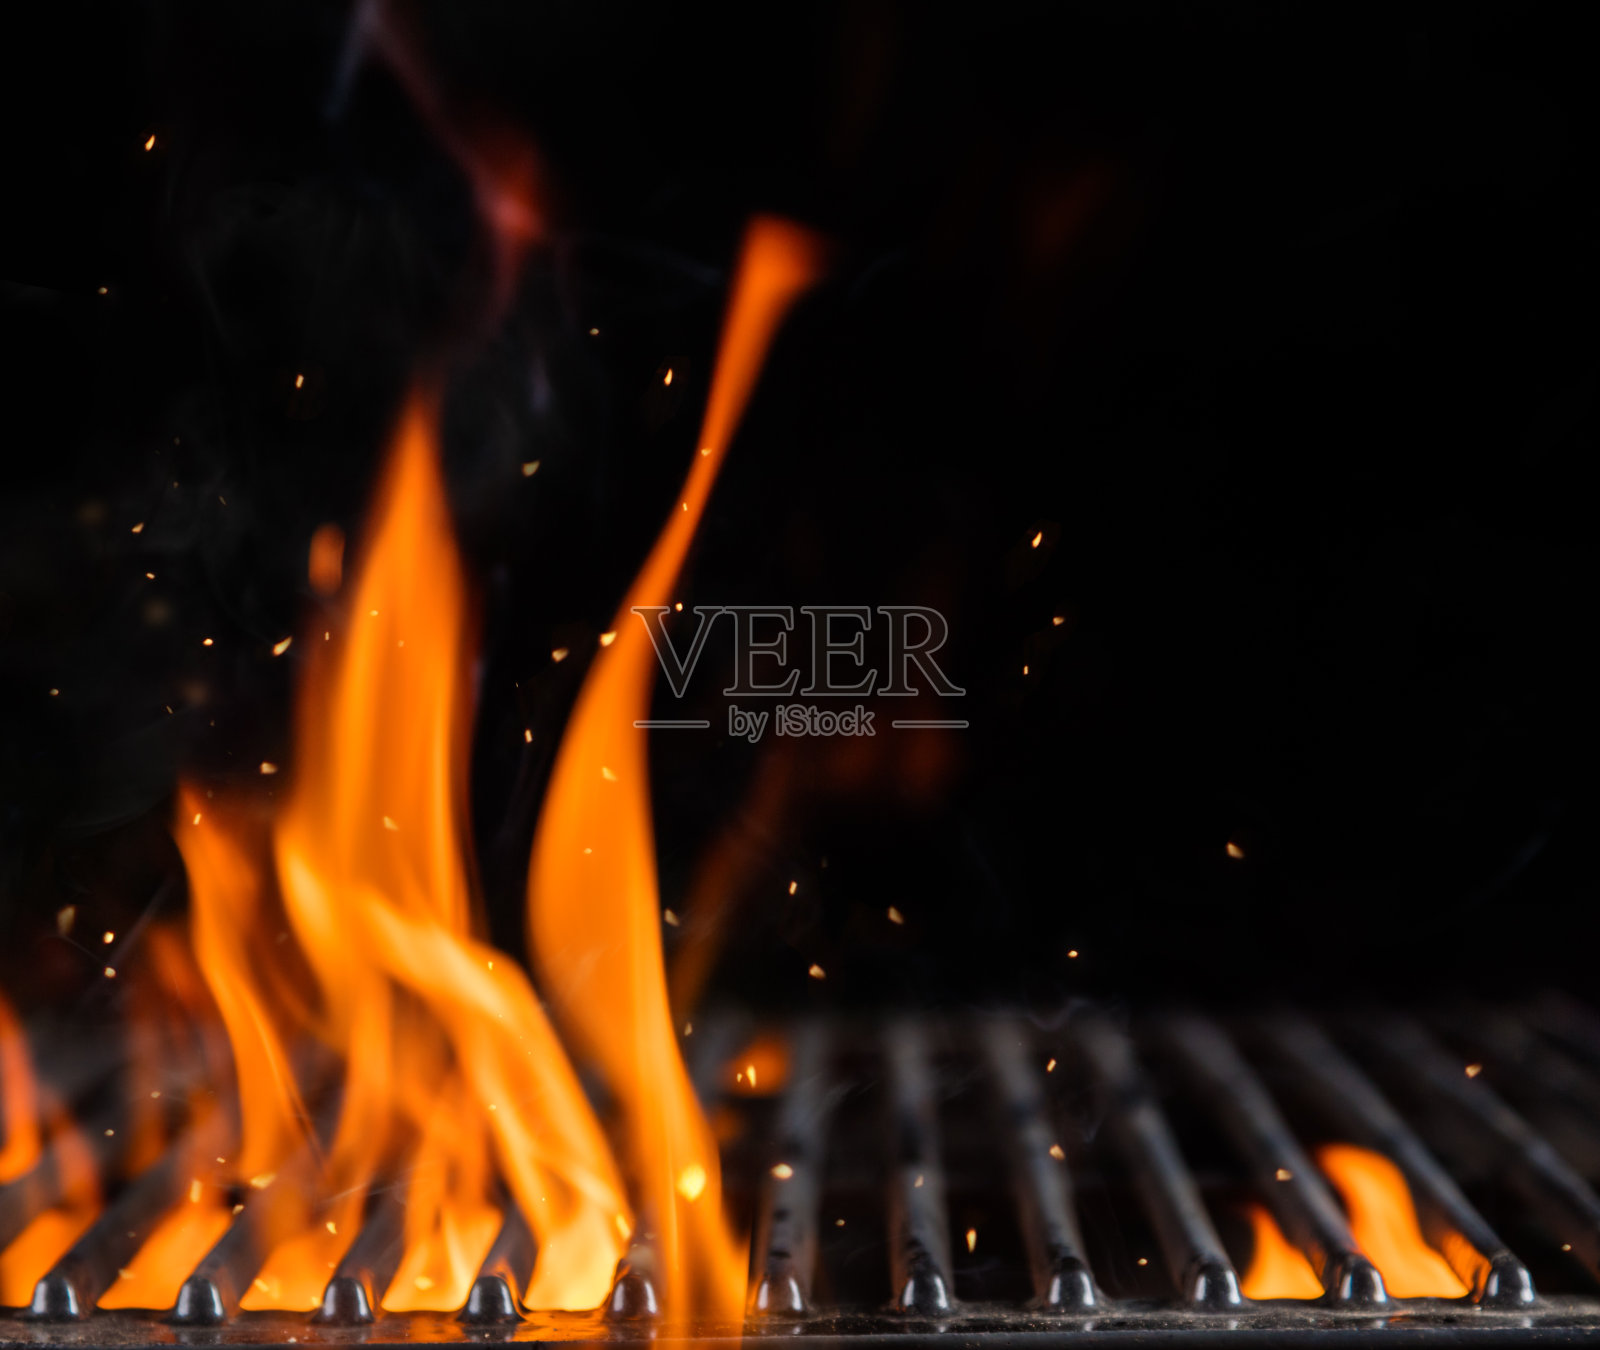 用明火清理燃烧的木炭烤架照片摄影图片